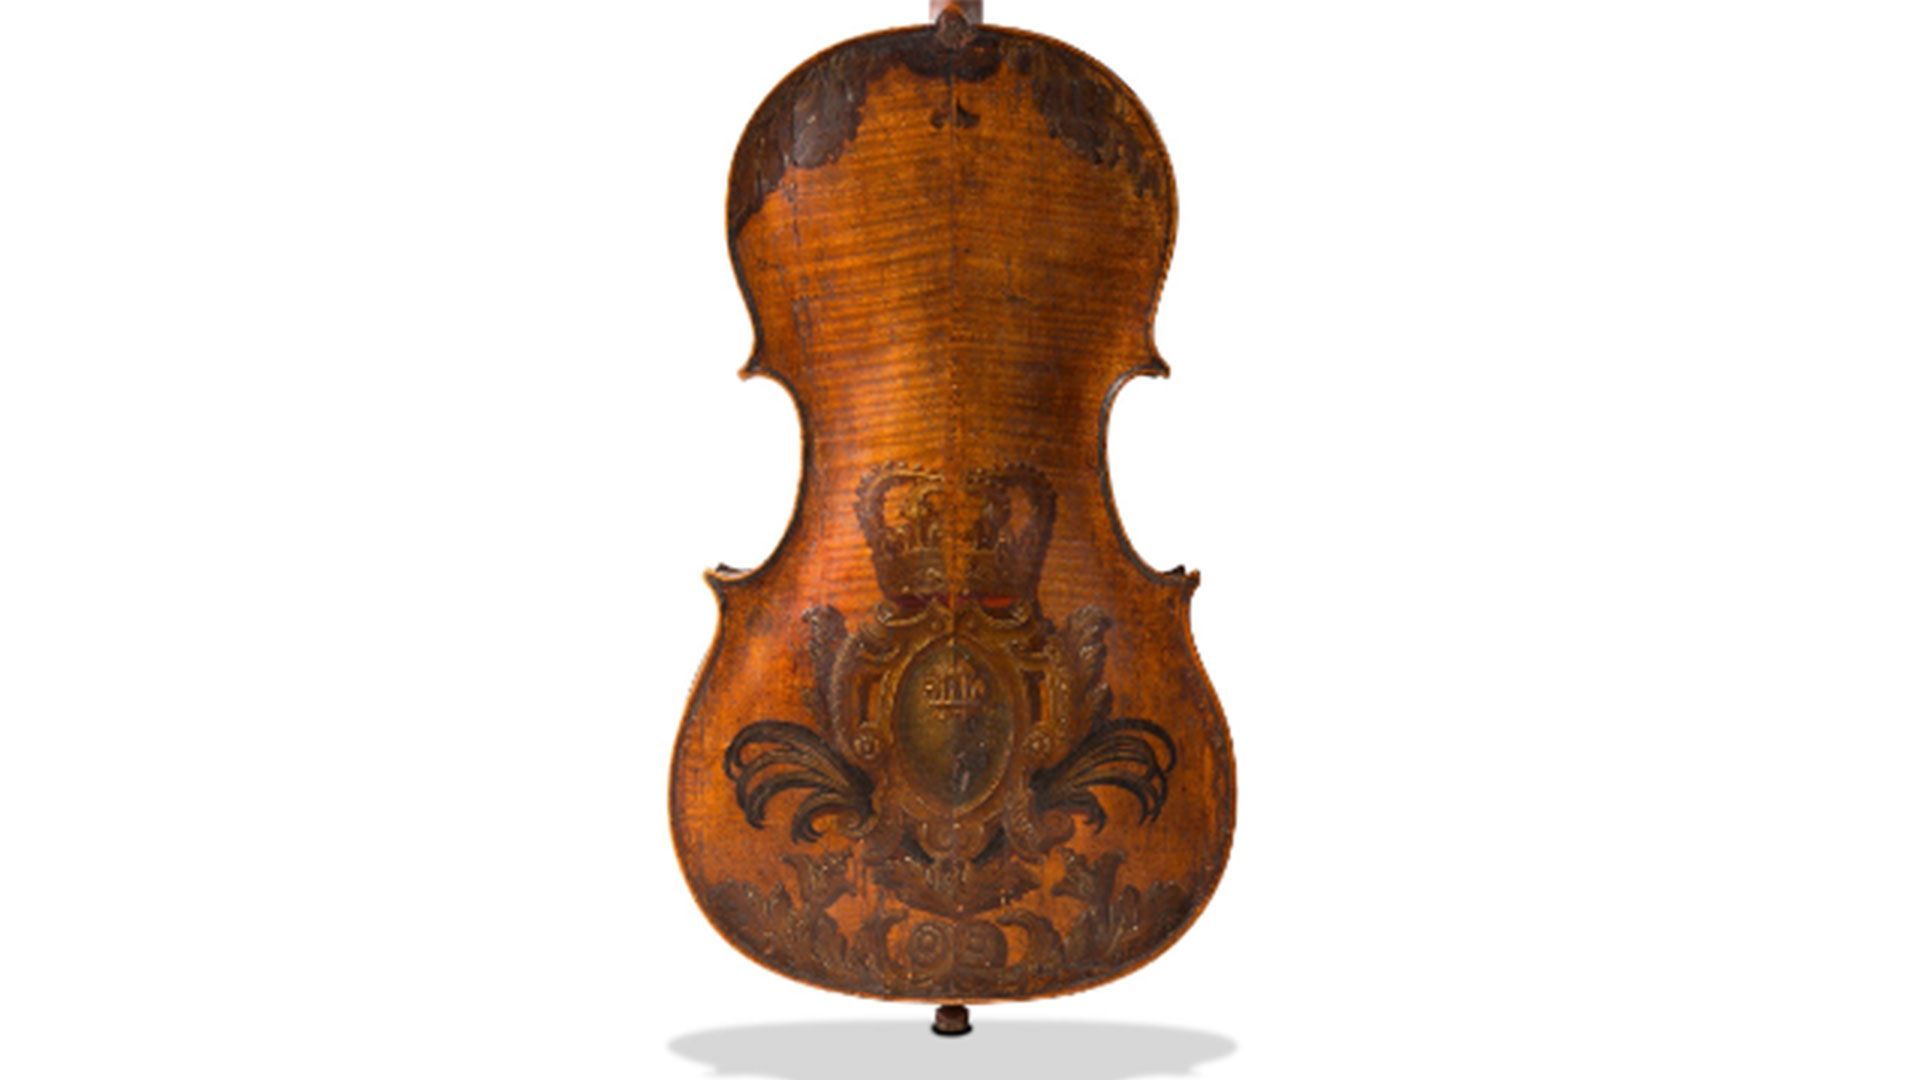 Basse de violon du début du XVIIIe siècle, vraisemblablement créée pour l'une des musiciens de la Musique du Roi, Louis XIV